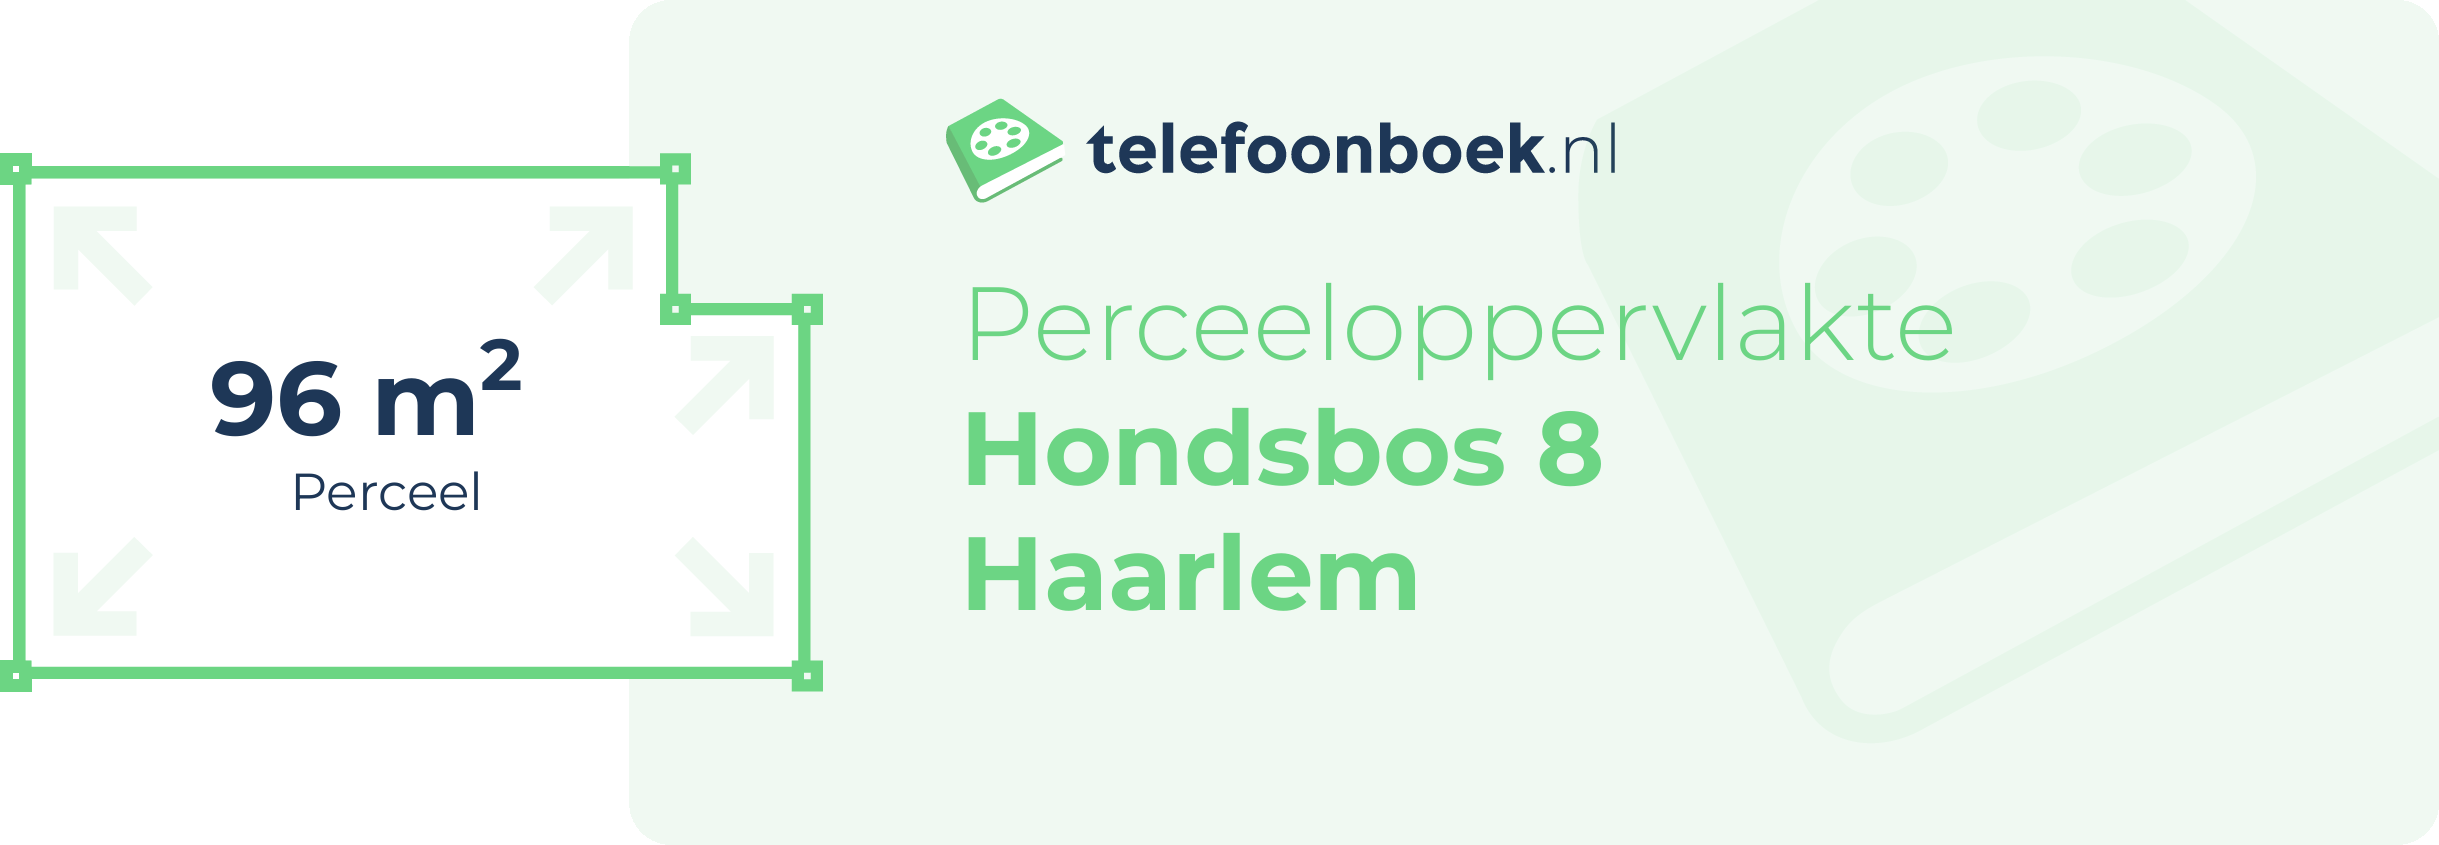 Perceeloppervlakte Hondsbos 8 Haarlem